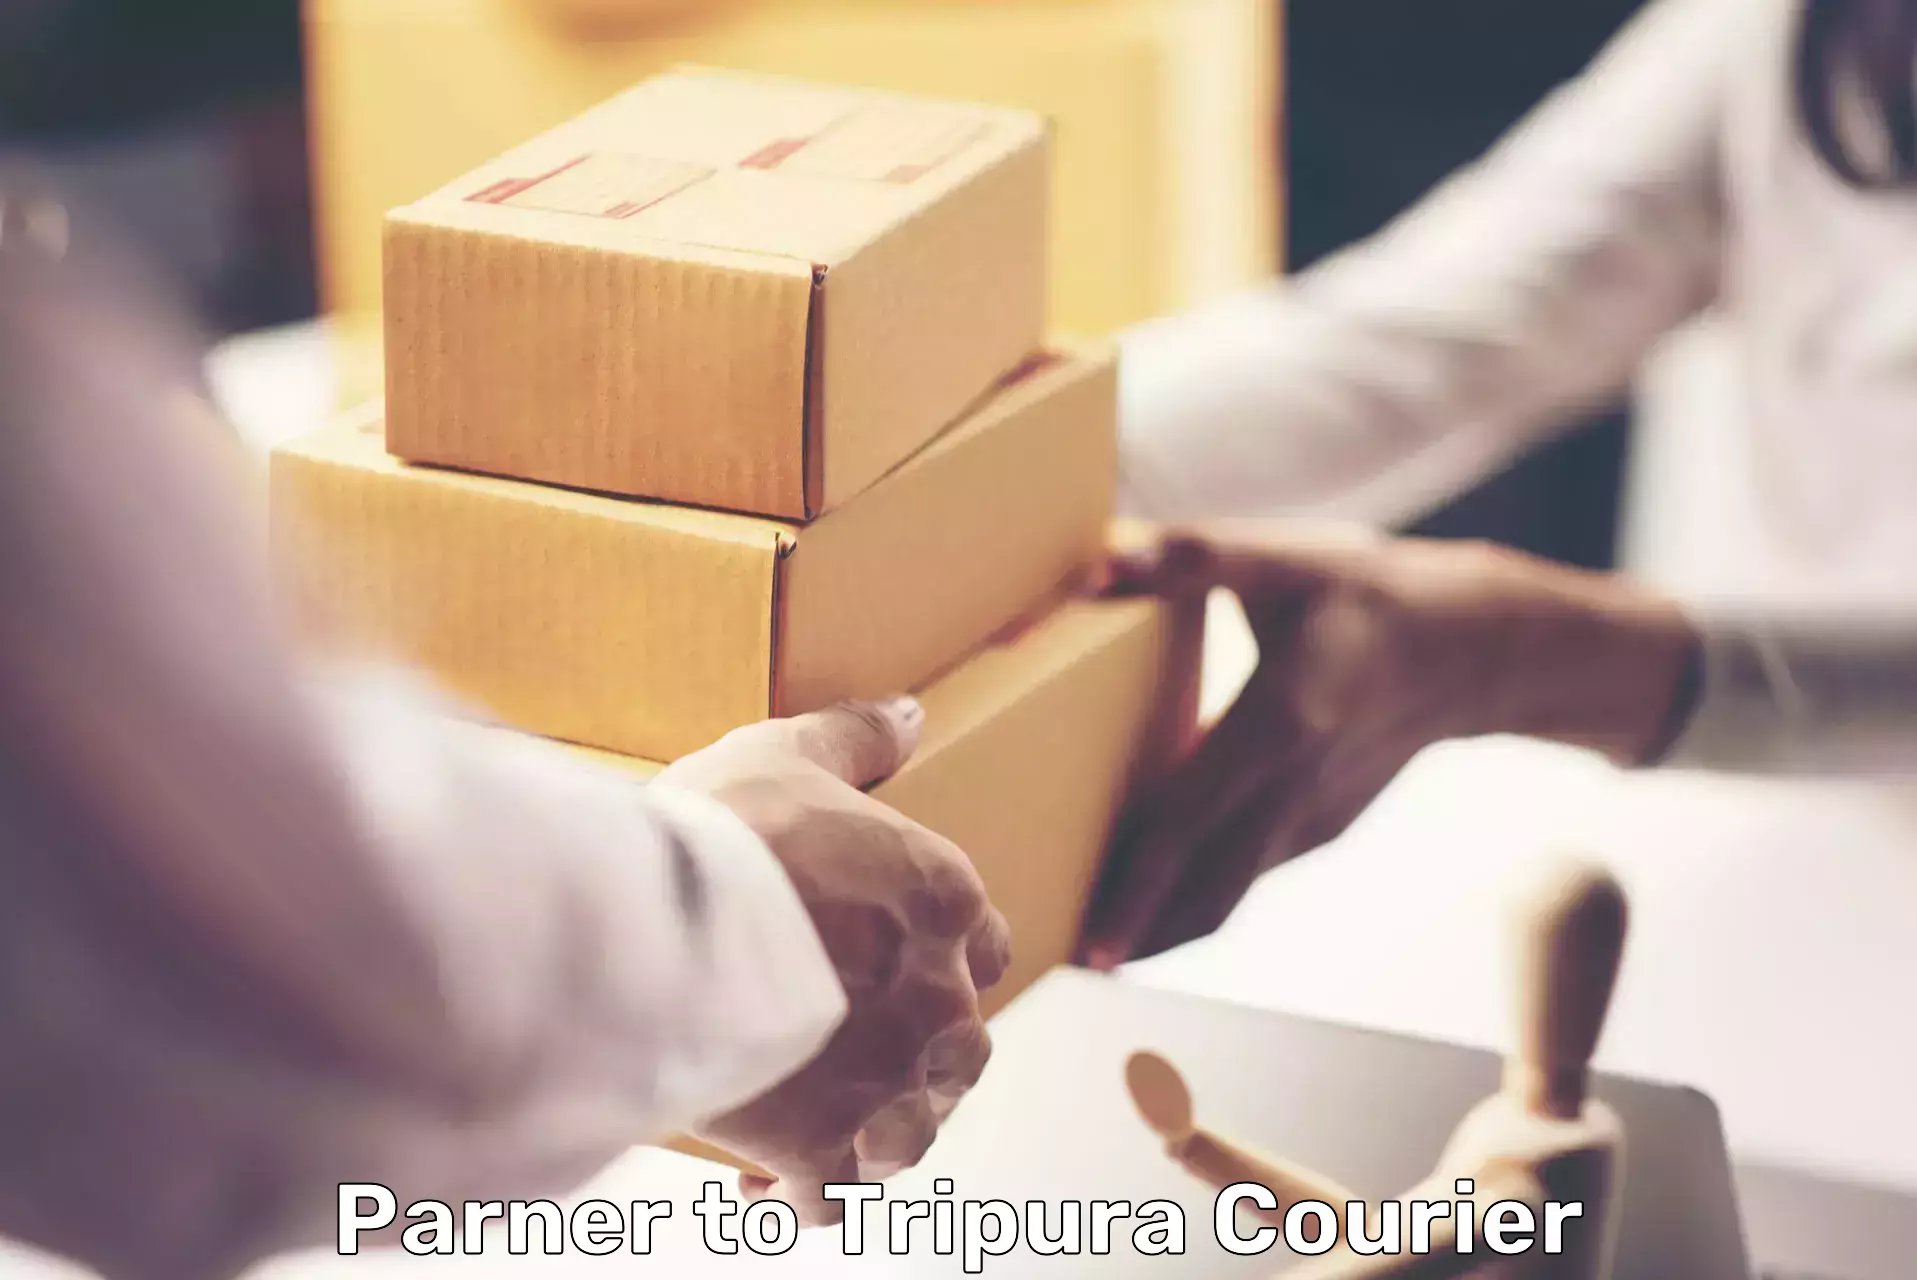 Affordable parcel service Parner to NIT Agartala